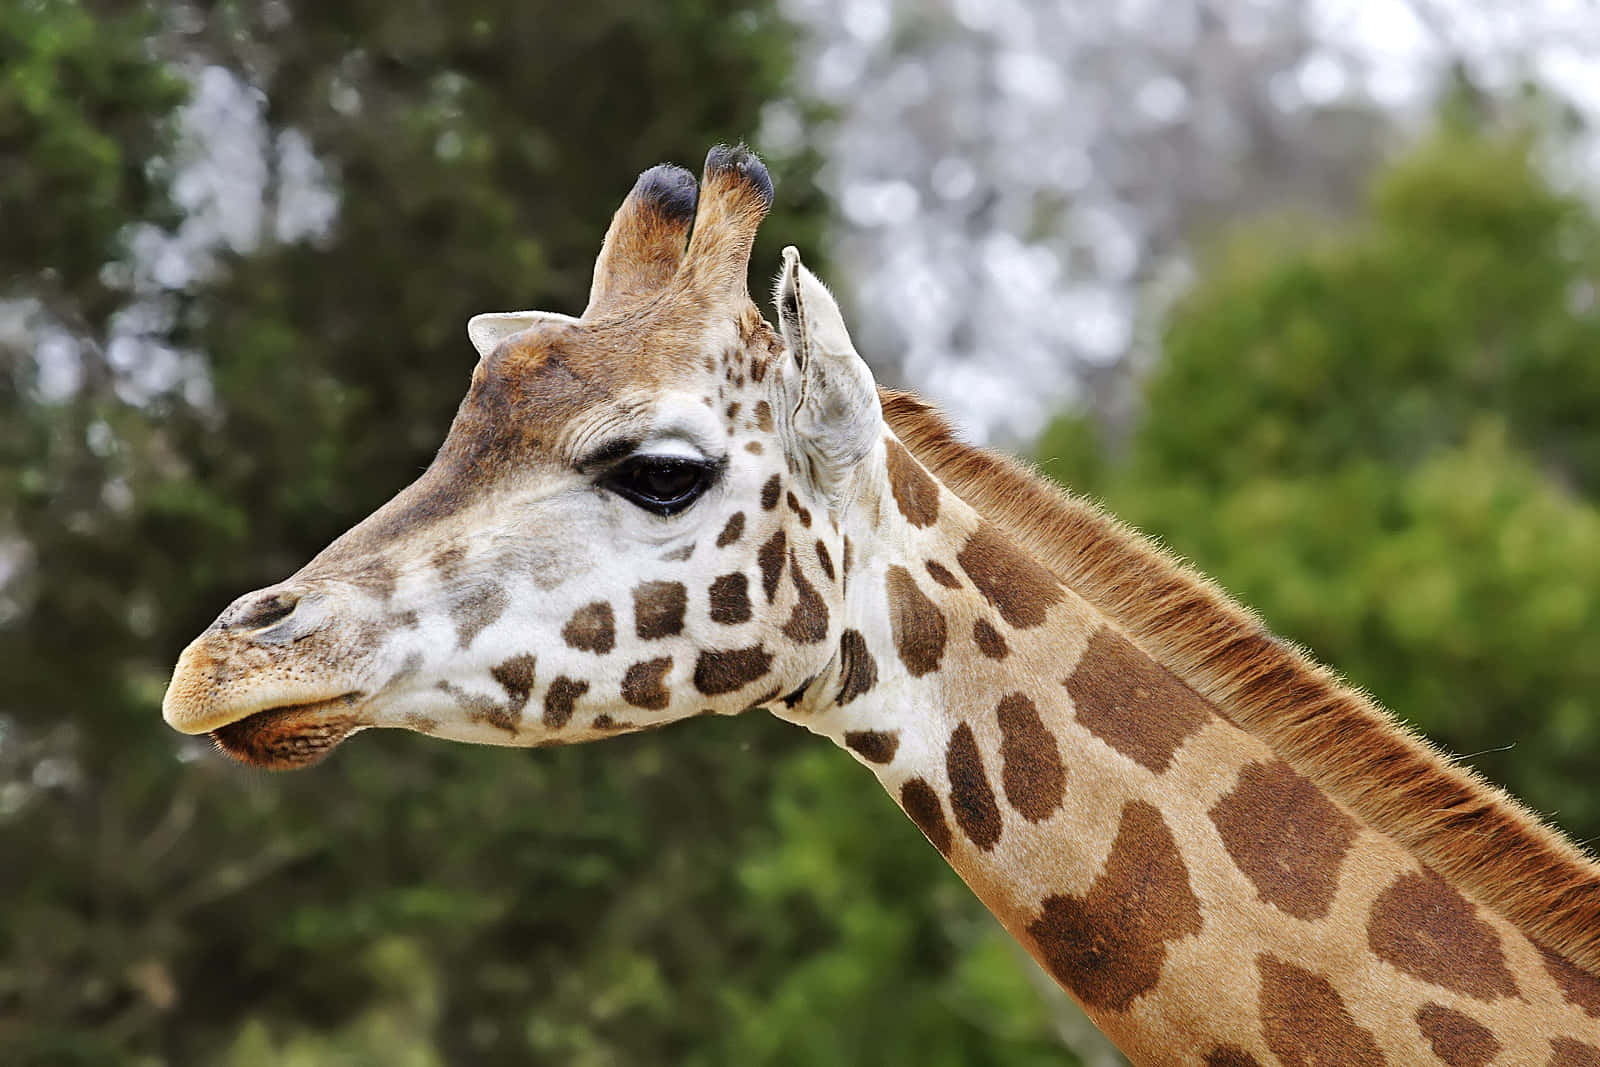 Melbourne Zoo Giraffe Profile Wallpaper